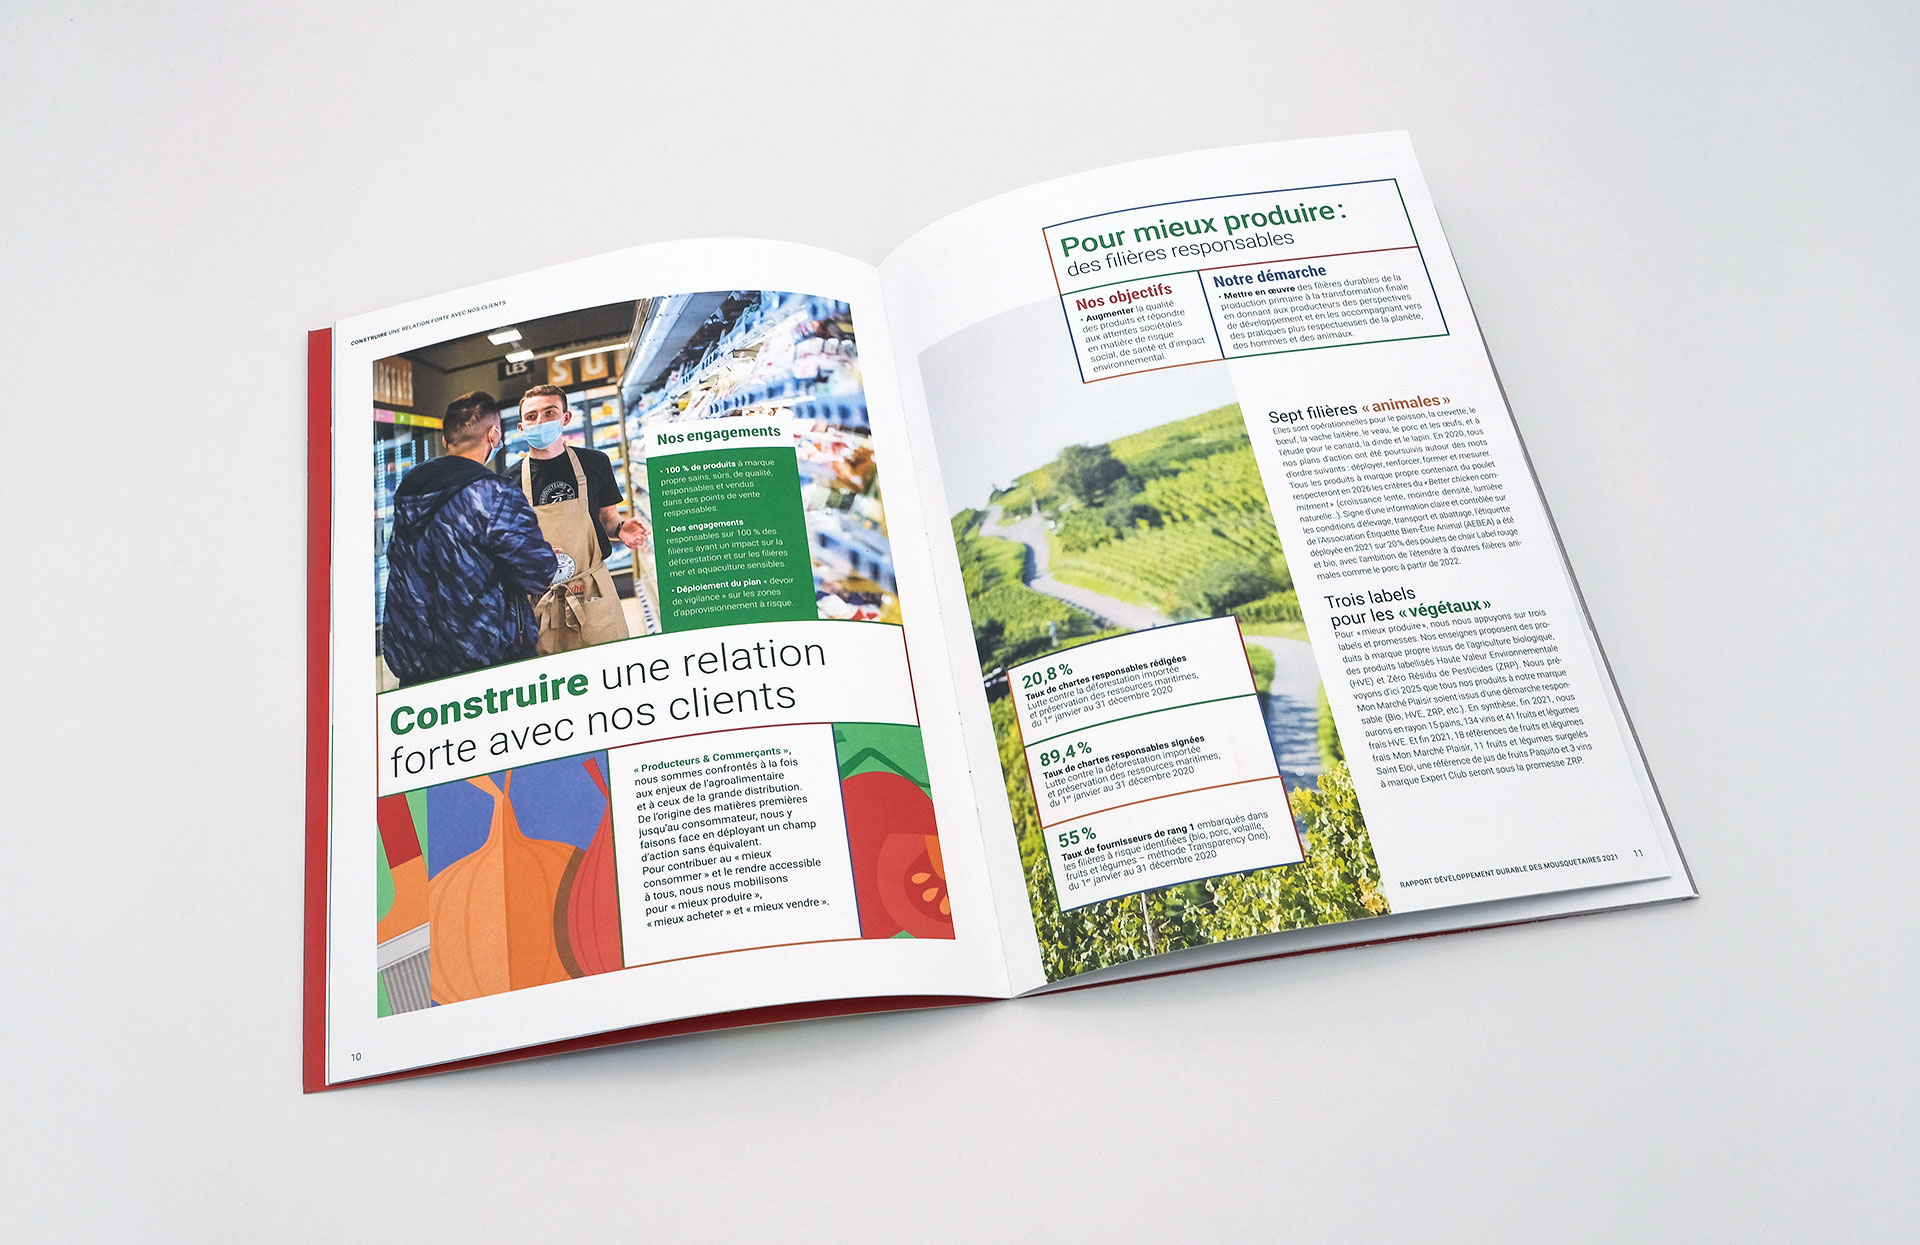 Une double page du rapport développement durable présentant des données chiffrées, illustrations et photographies présentant la relation clients